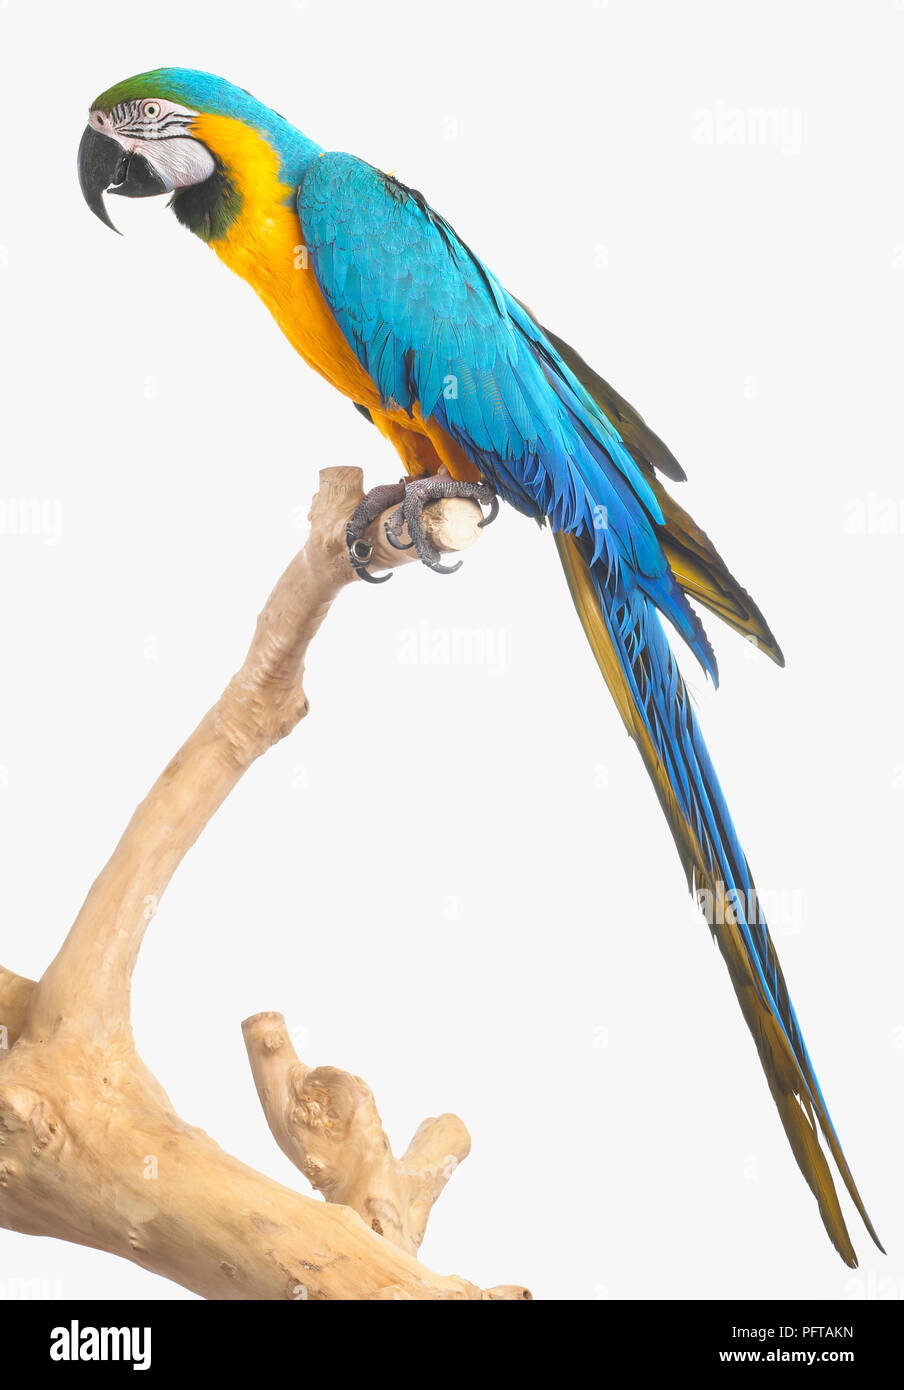 Ara bleu et jaune, bleu et or Macaw (Ara ararauna), Parrot Banque D'Images